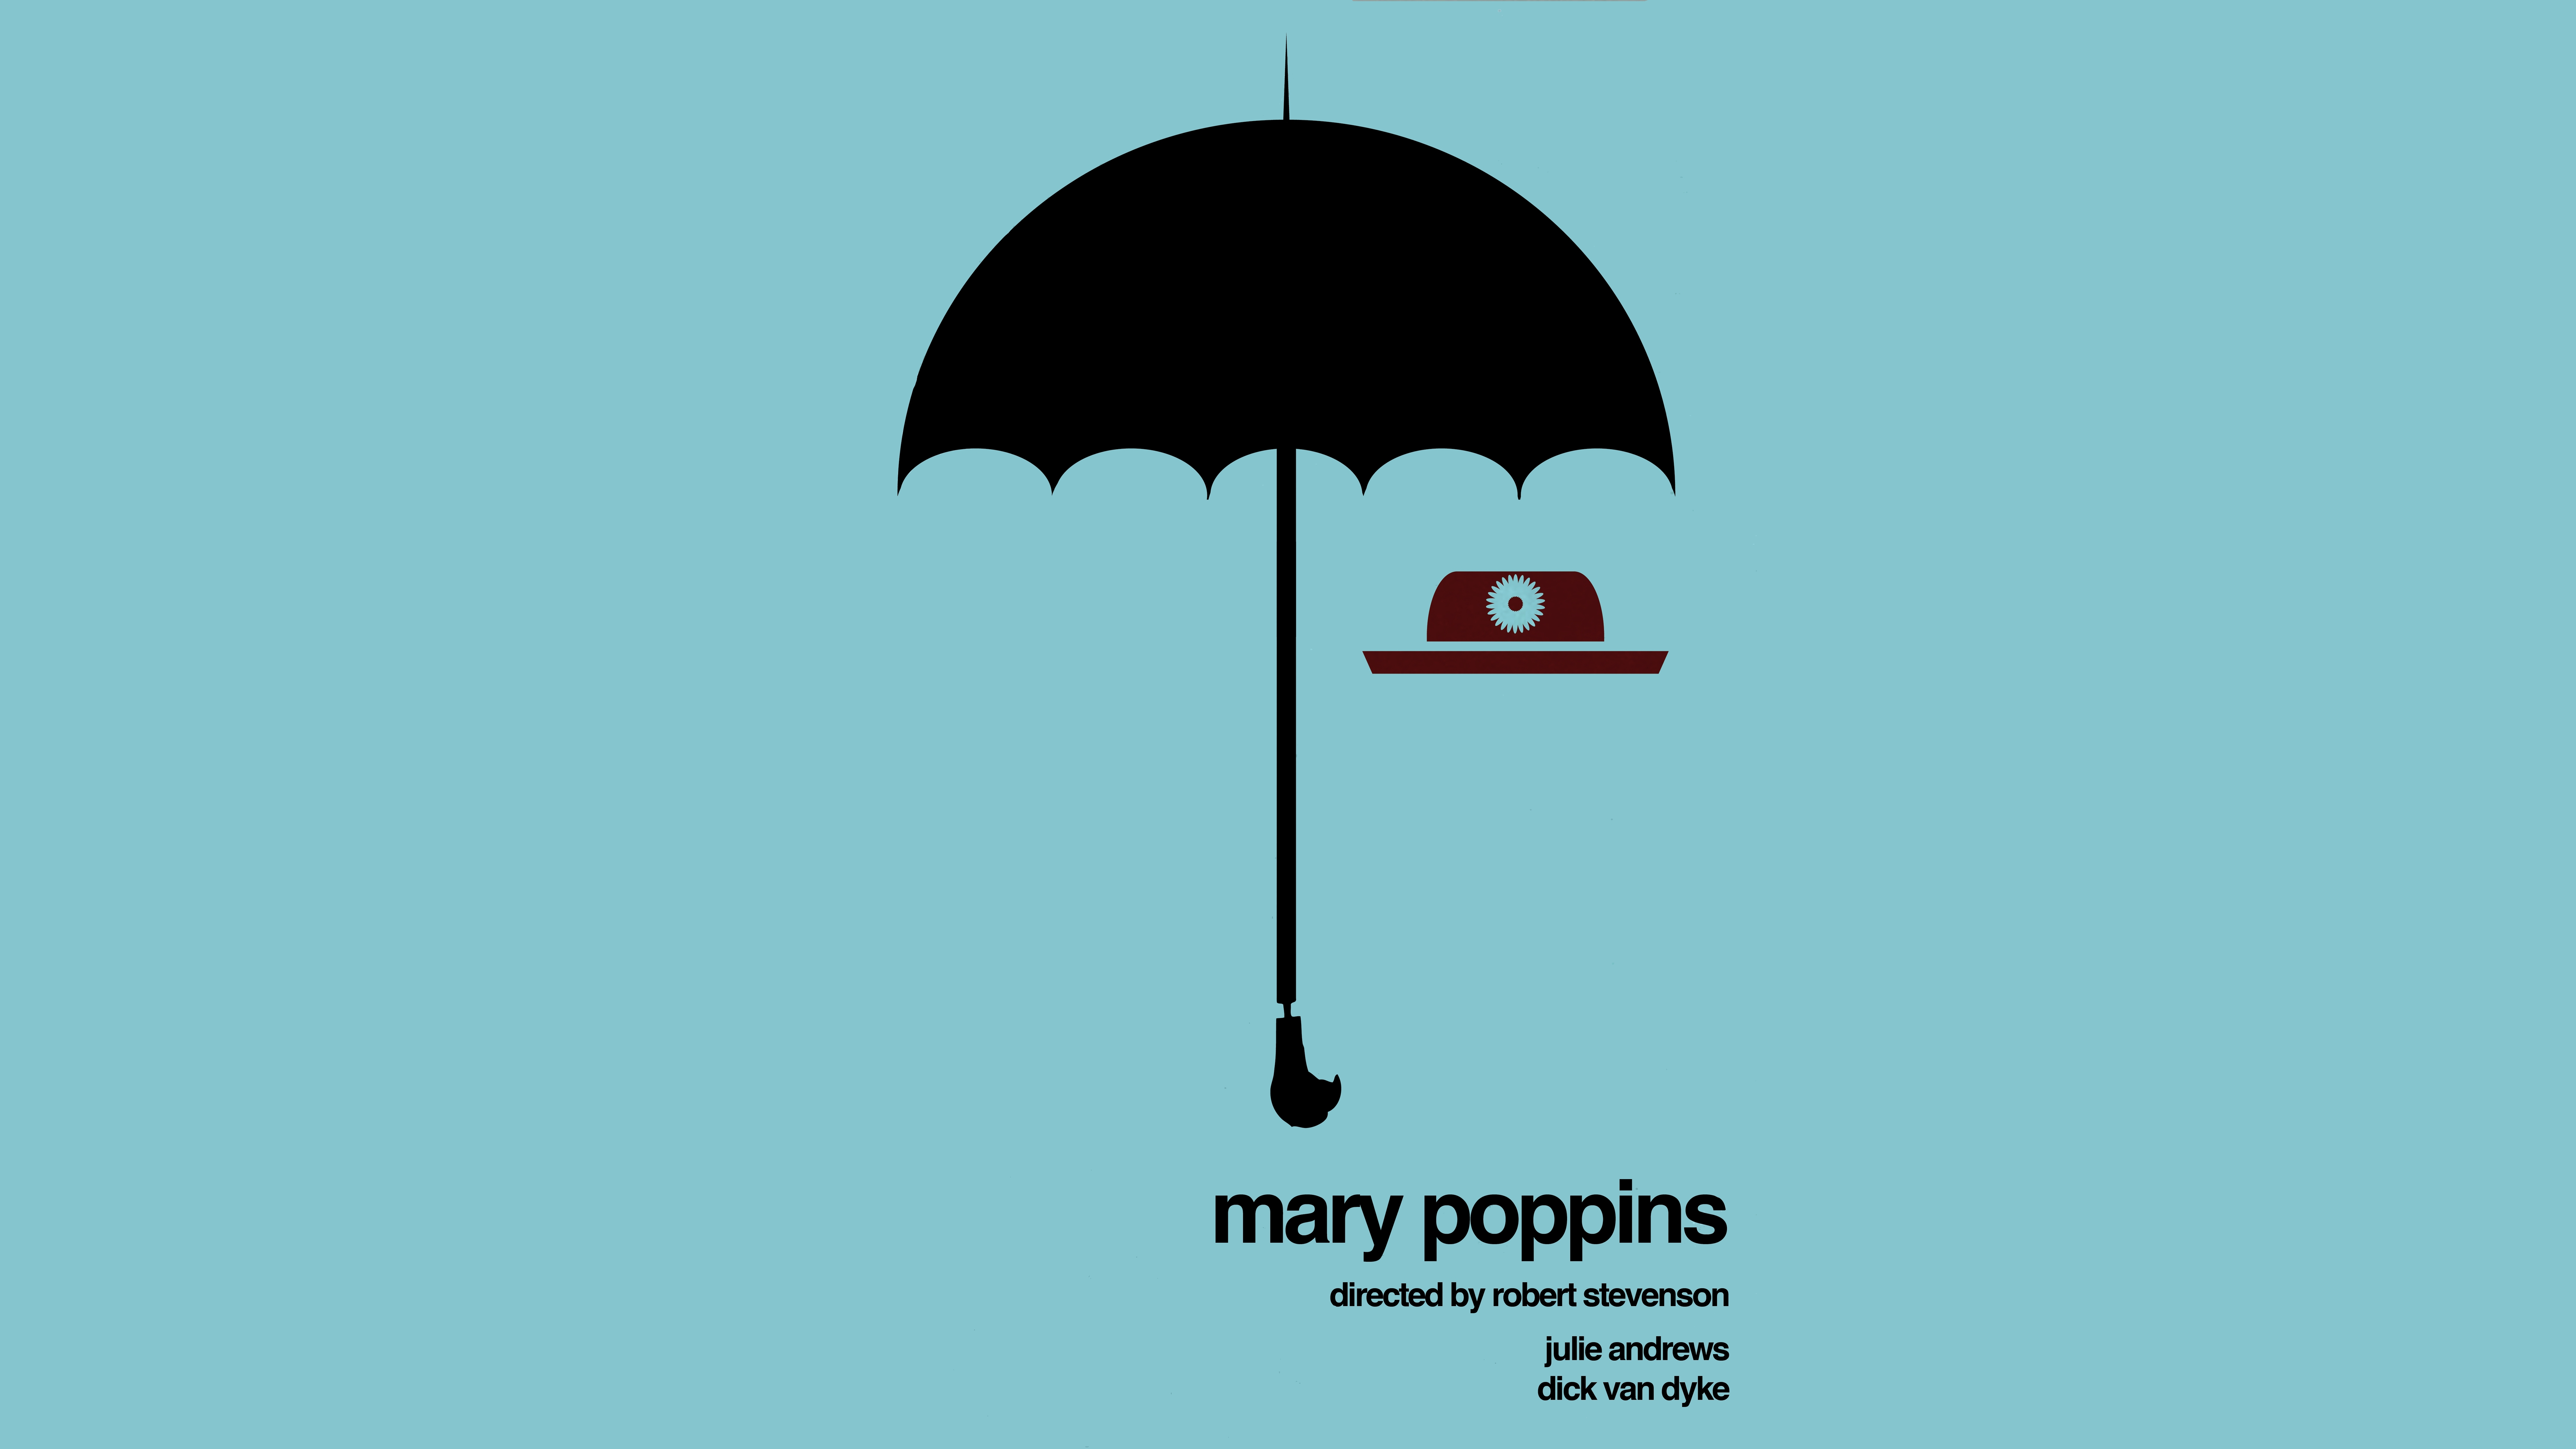 mary poppins wallpaper,regenschirm,blau,produkt,illustration,türkis